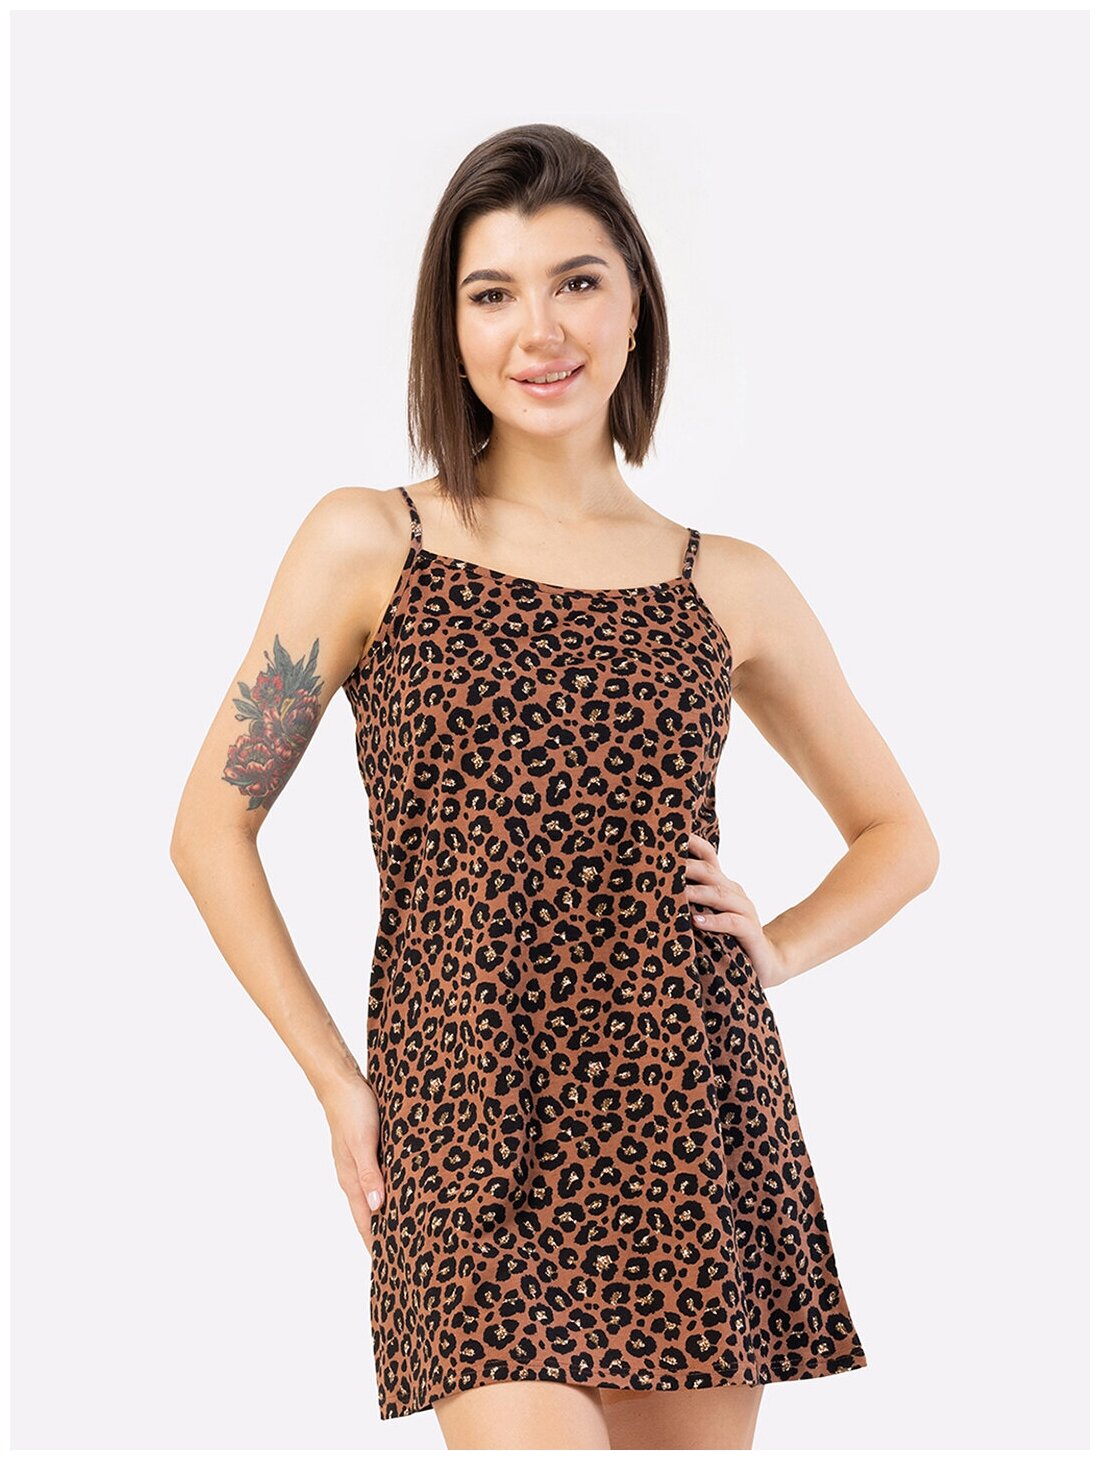 Сорочка женская HappyFox, HF3000MSP размер 52, цвет леопард - фотография № 1